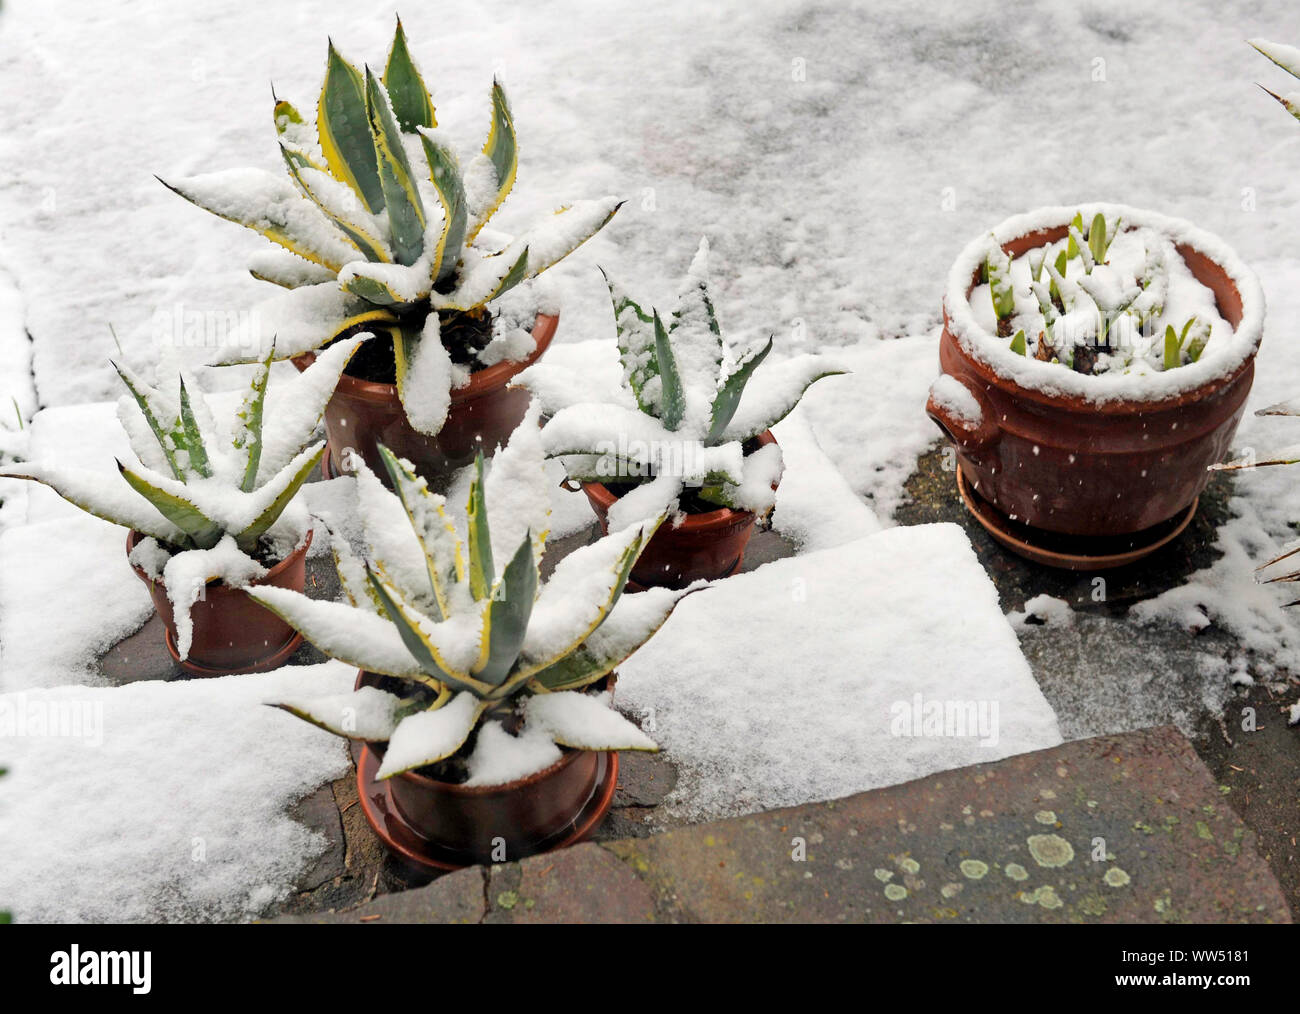 La nieve fresca en postwinter cubriendo las plantas en macetas en la terraza del jardín Foto de stock